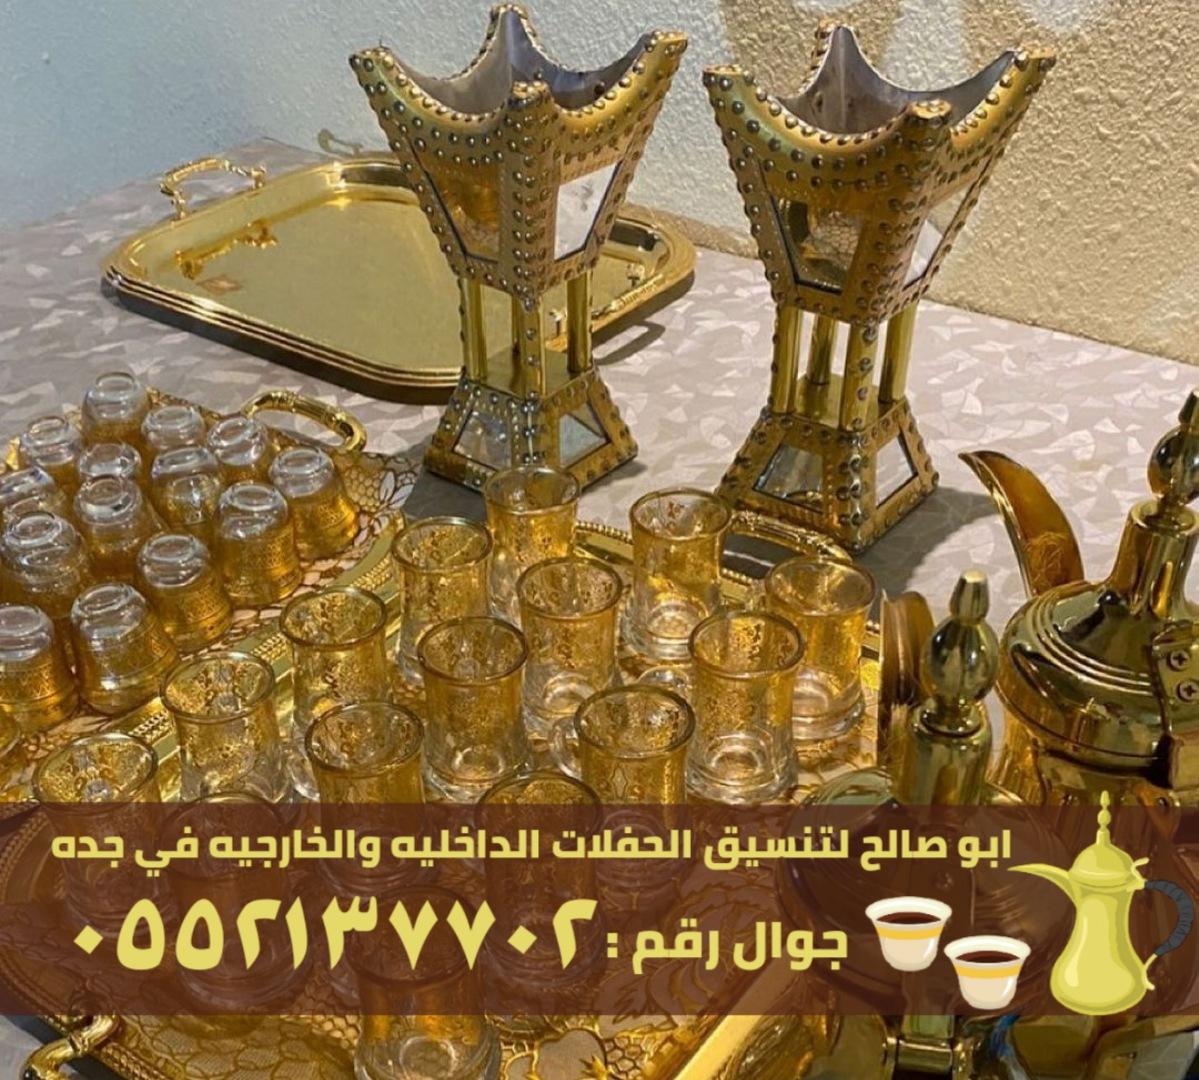 صبابين و قهوجيين ضيافة في جدة,0552137702 430904198